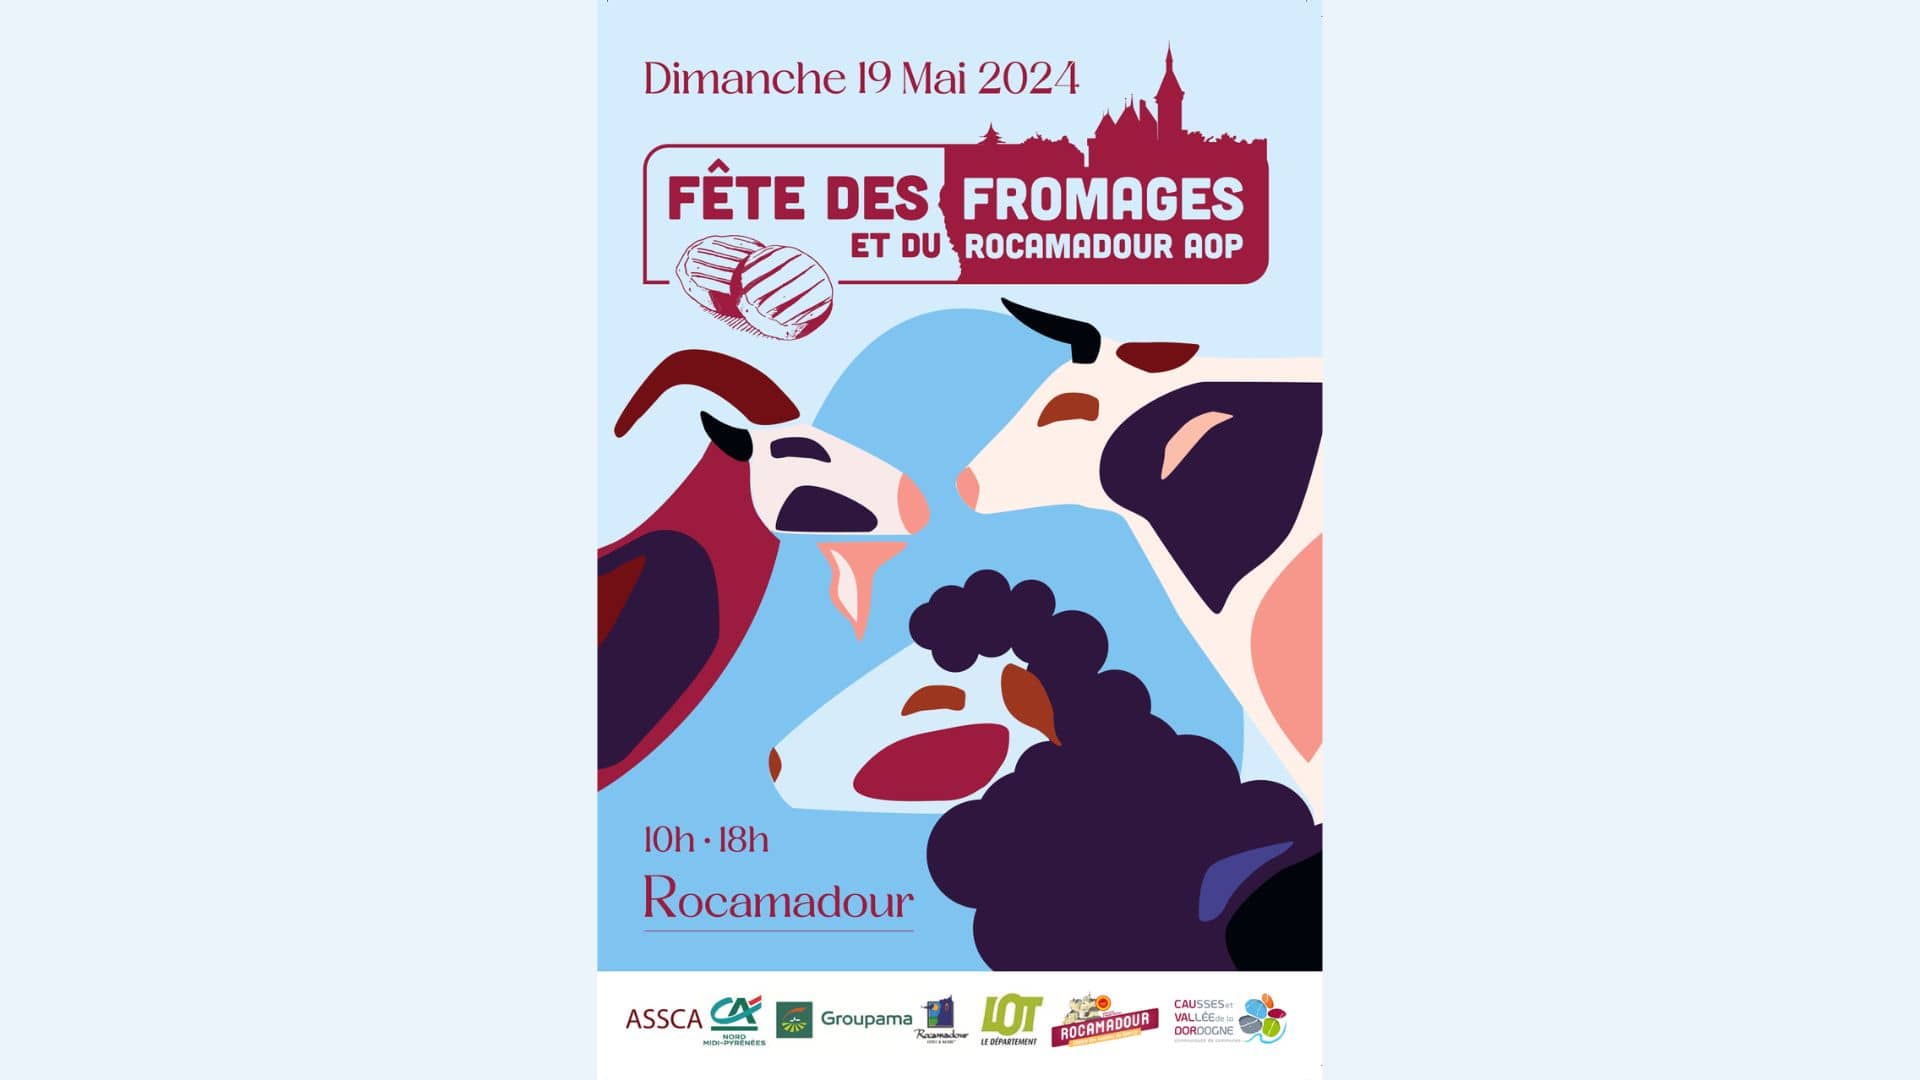 Fête des Fromages et du Rocamadour AOP le dimanche 19 mai à Rocamadour !